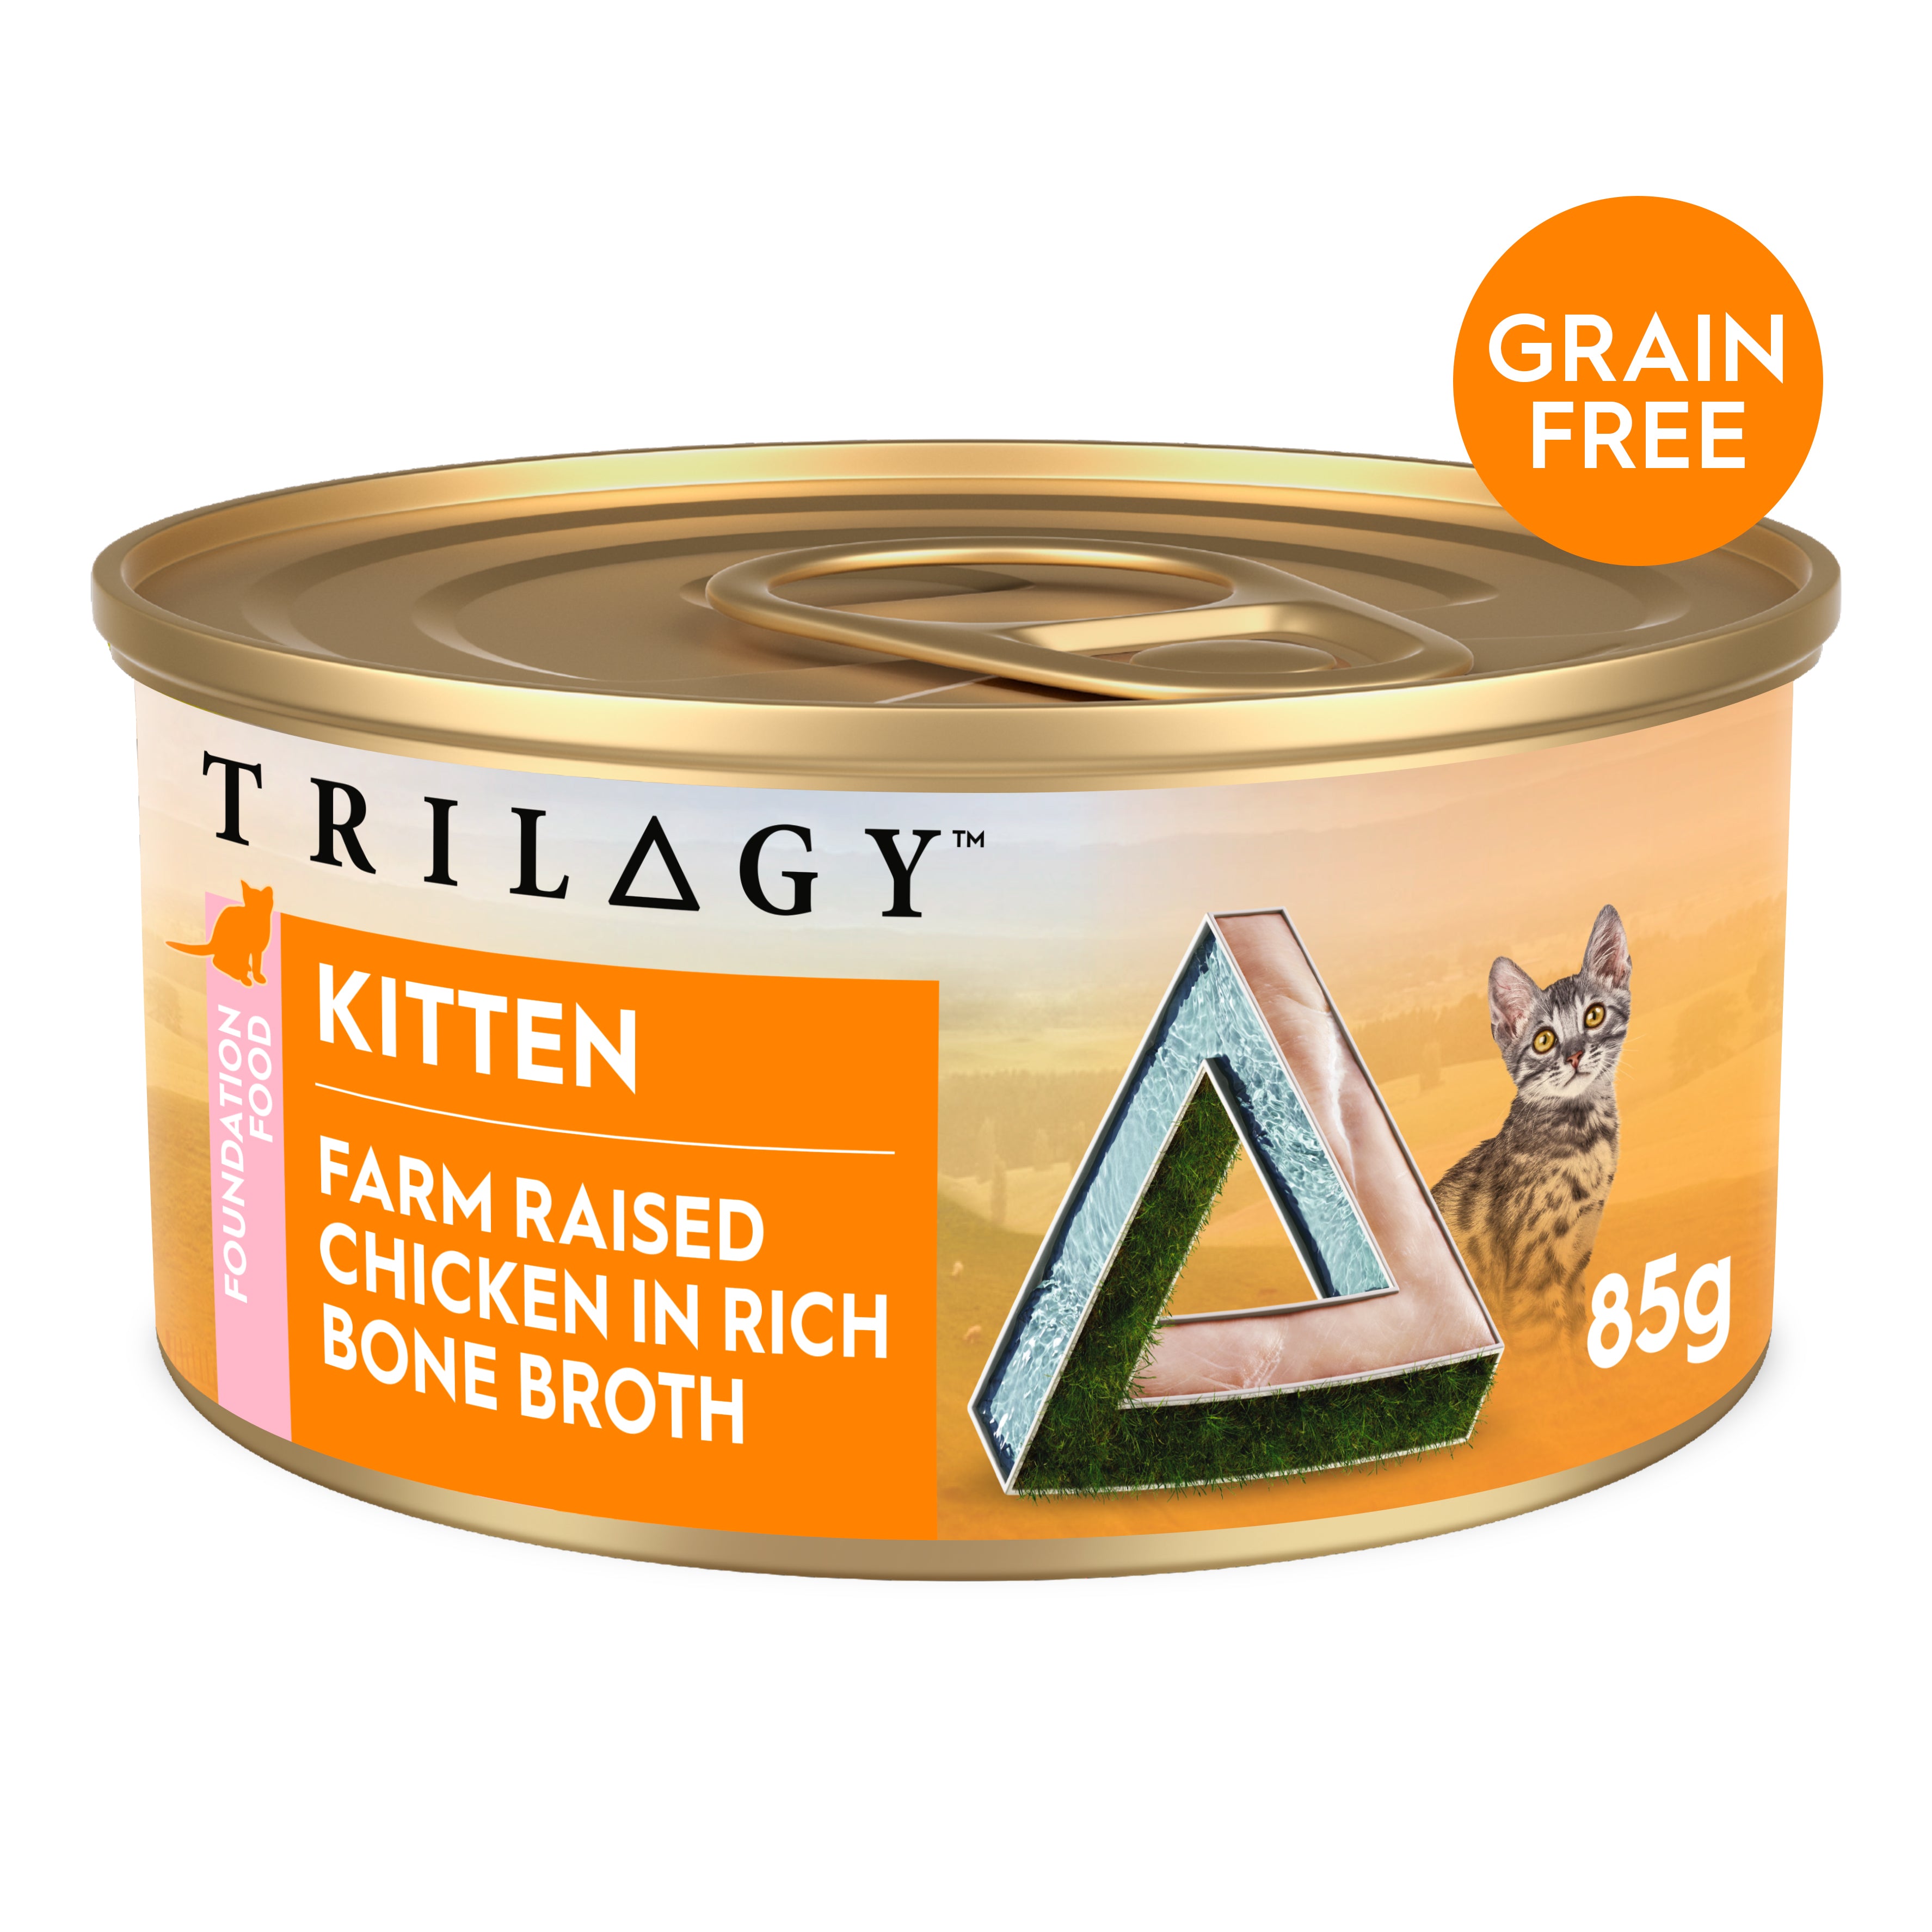 TRILOGY™ KITTEN FARM RAISED CHICKEN IN BONE BROTH 85G